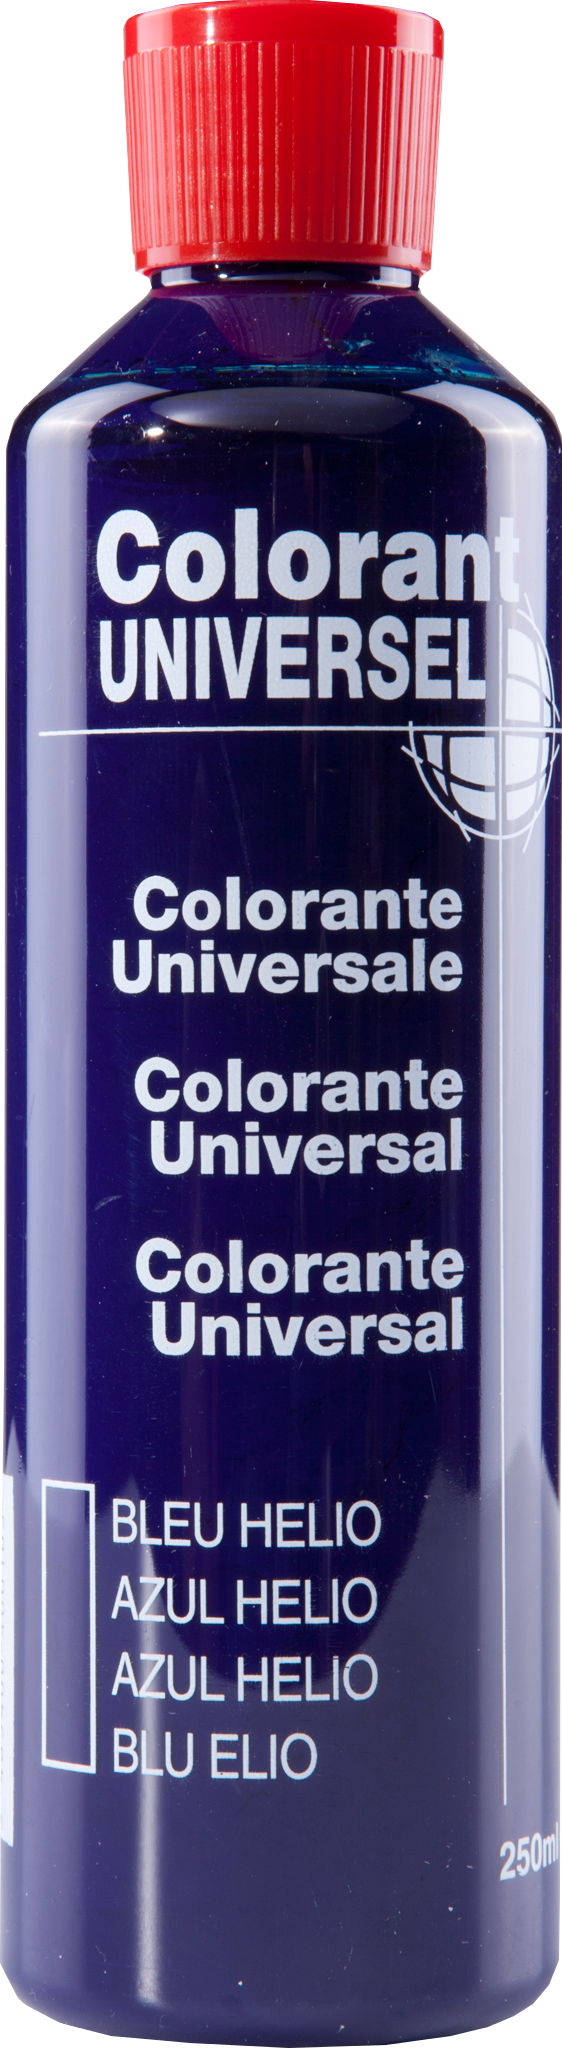 Colorant universel pour peinture Bleu hélio 250ml